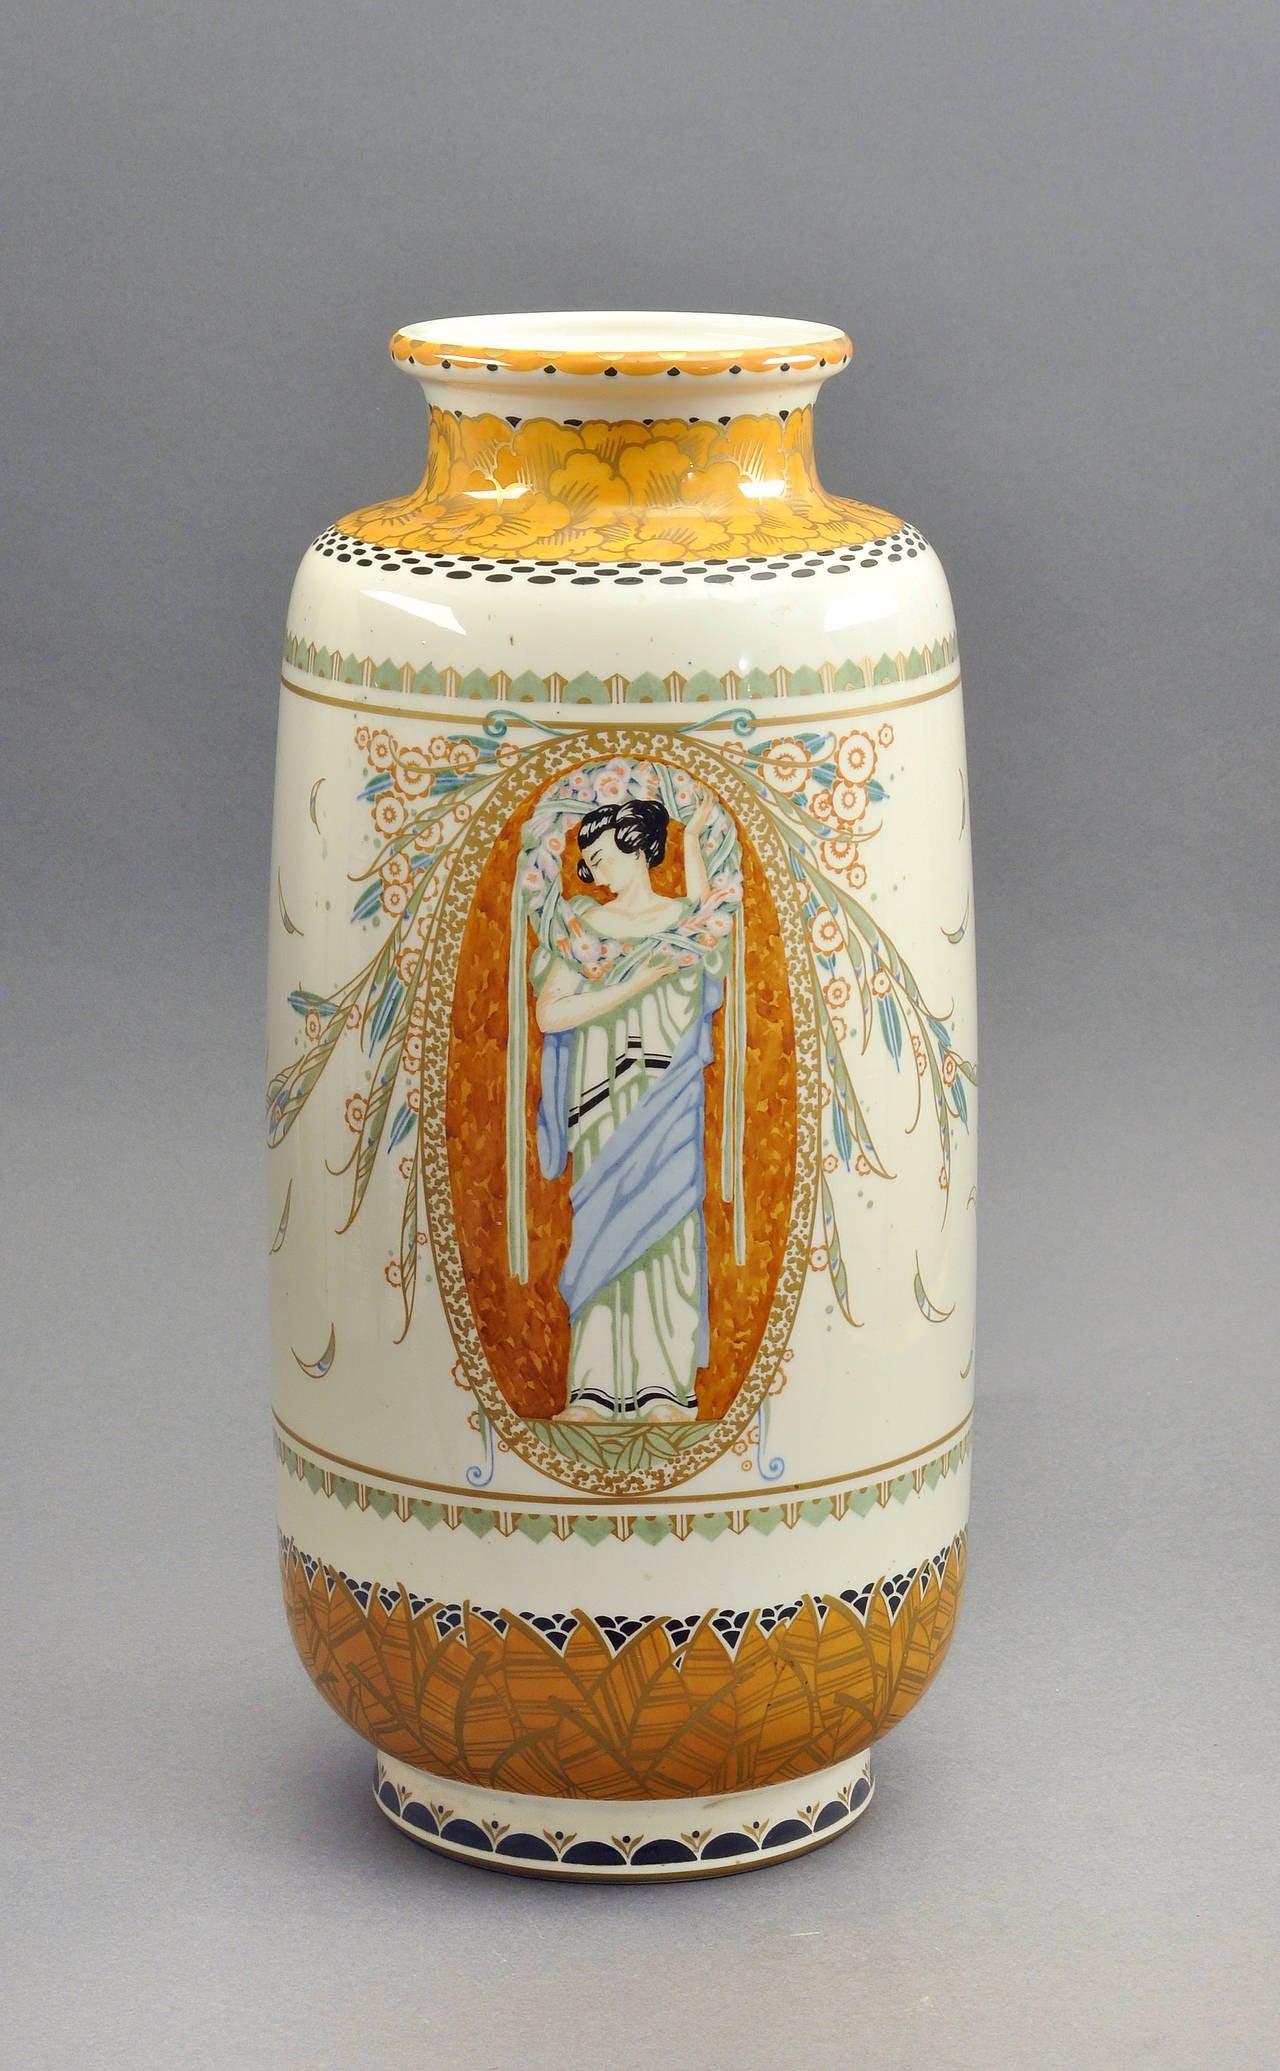 Art Deco Highly Important 1924 Manufacture Nationale de Sèvres Porcelain Vase For Sale